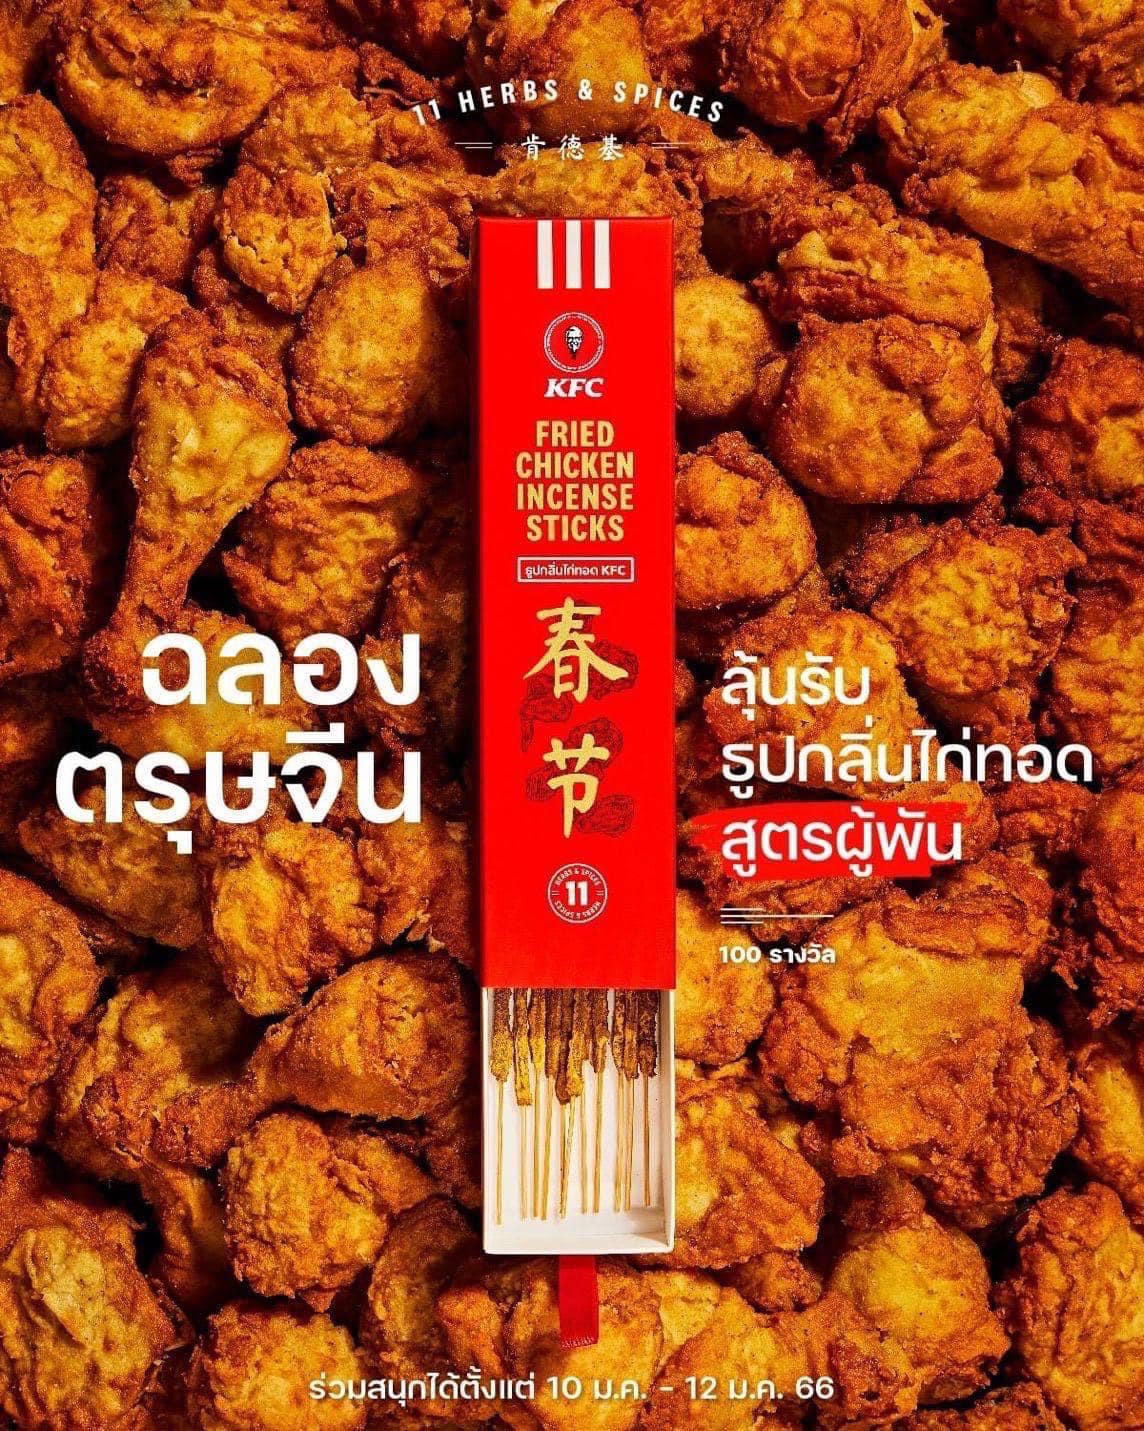 農曆新年，泰國肯德基推出炸雞味燒香